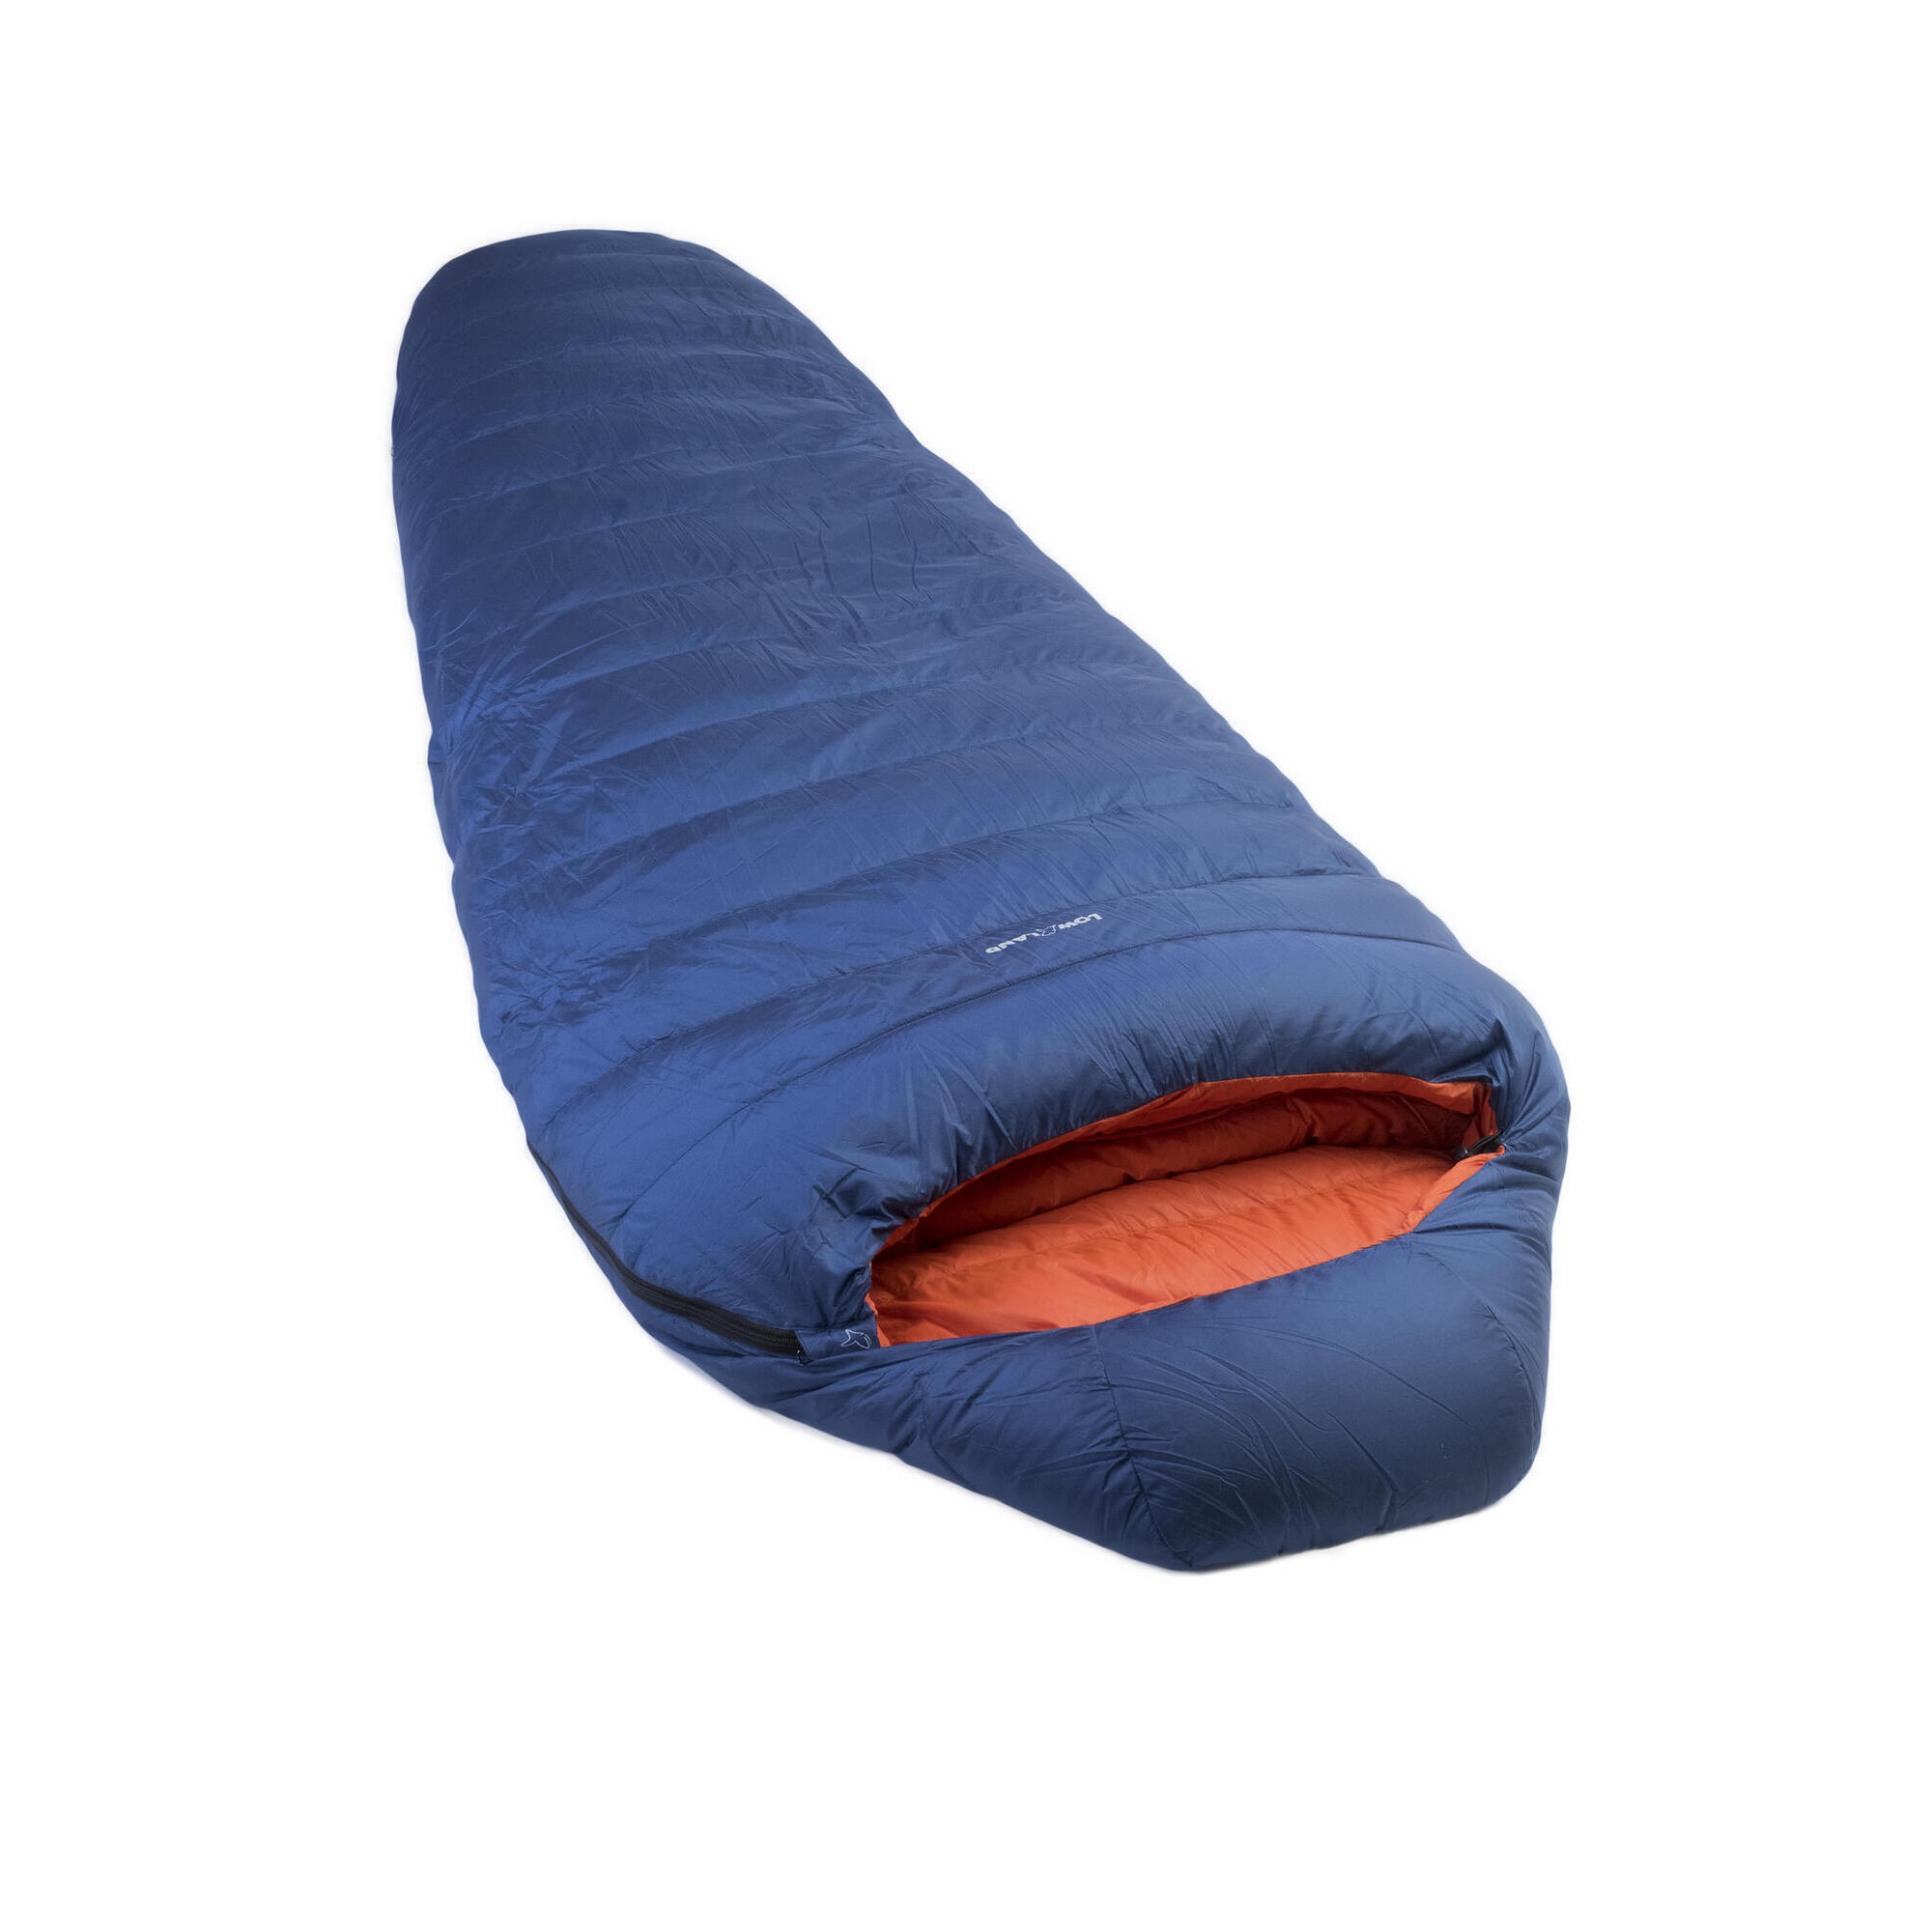 Мешок Kibo - 5 пуховый спальный нейлоновый 225x80 см, сине - оранжевый теплый детский спальный мешок конверт зимняя детская спальный мешок мешок для ног вязаный спальный мешок для коляски вязаное шерстяное